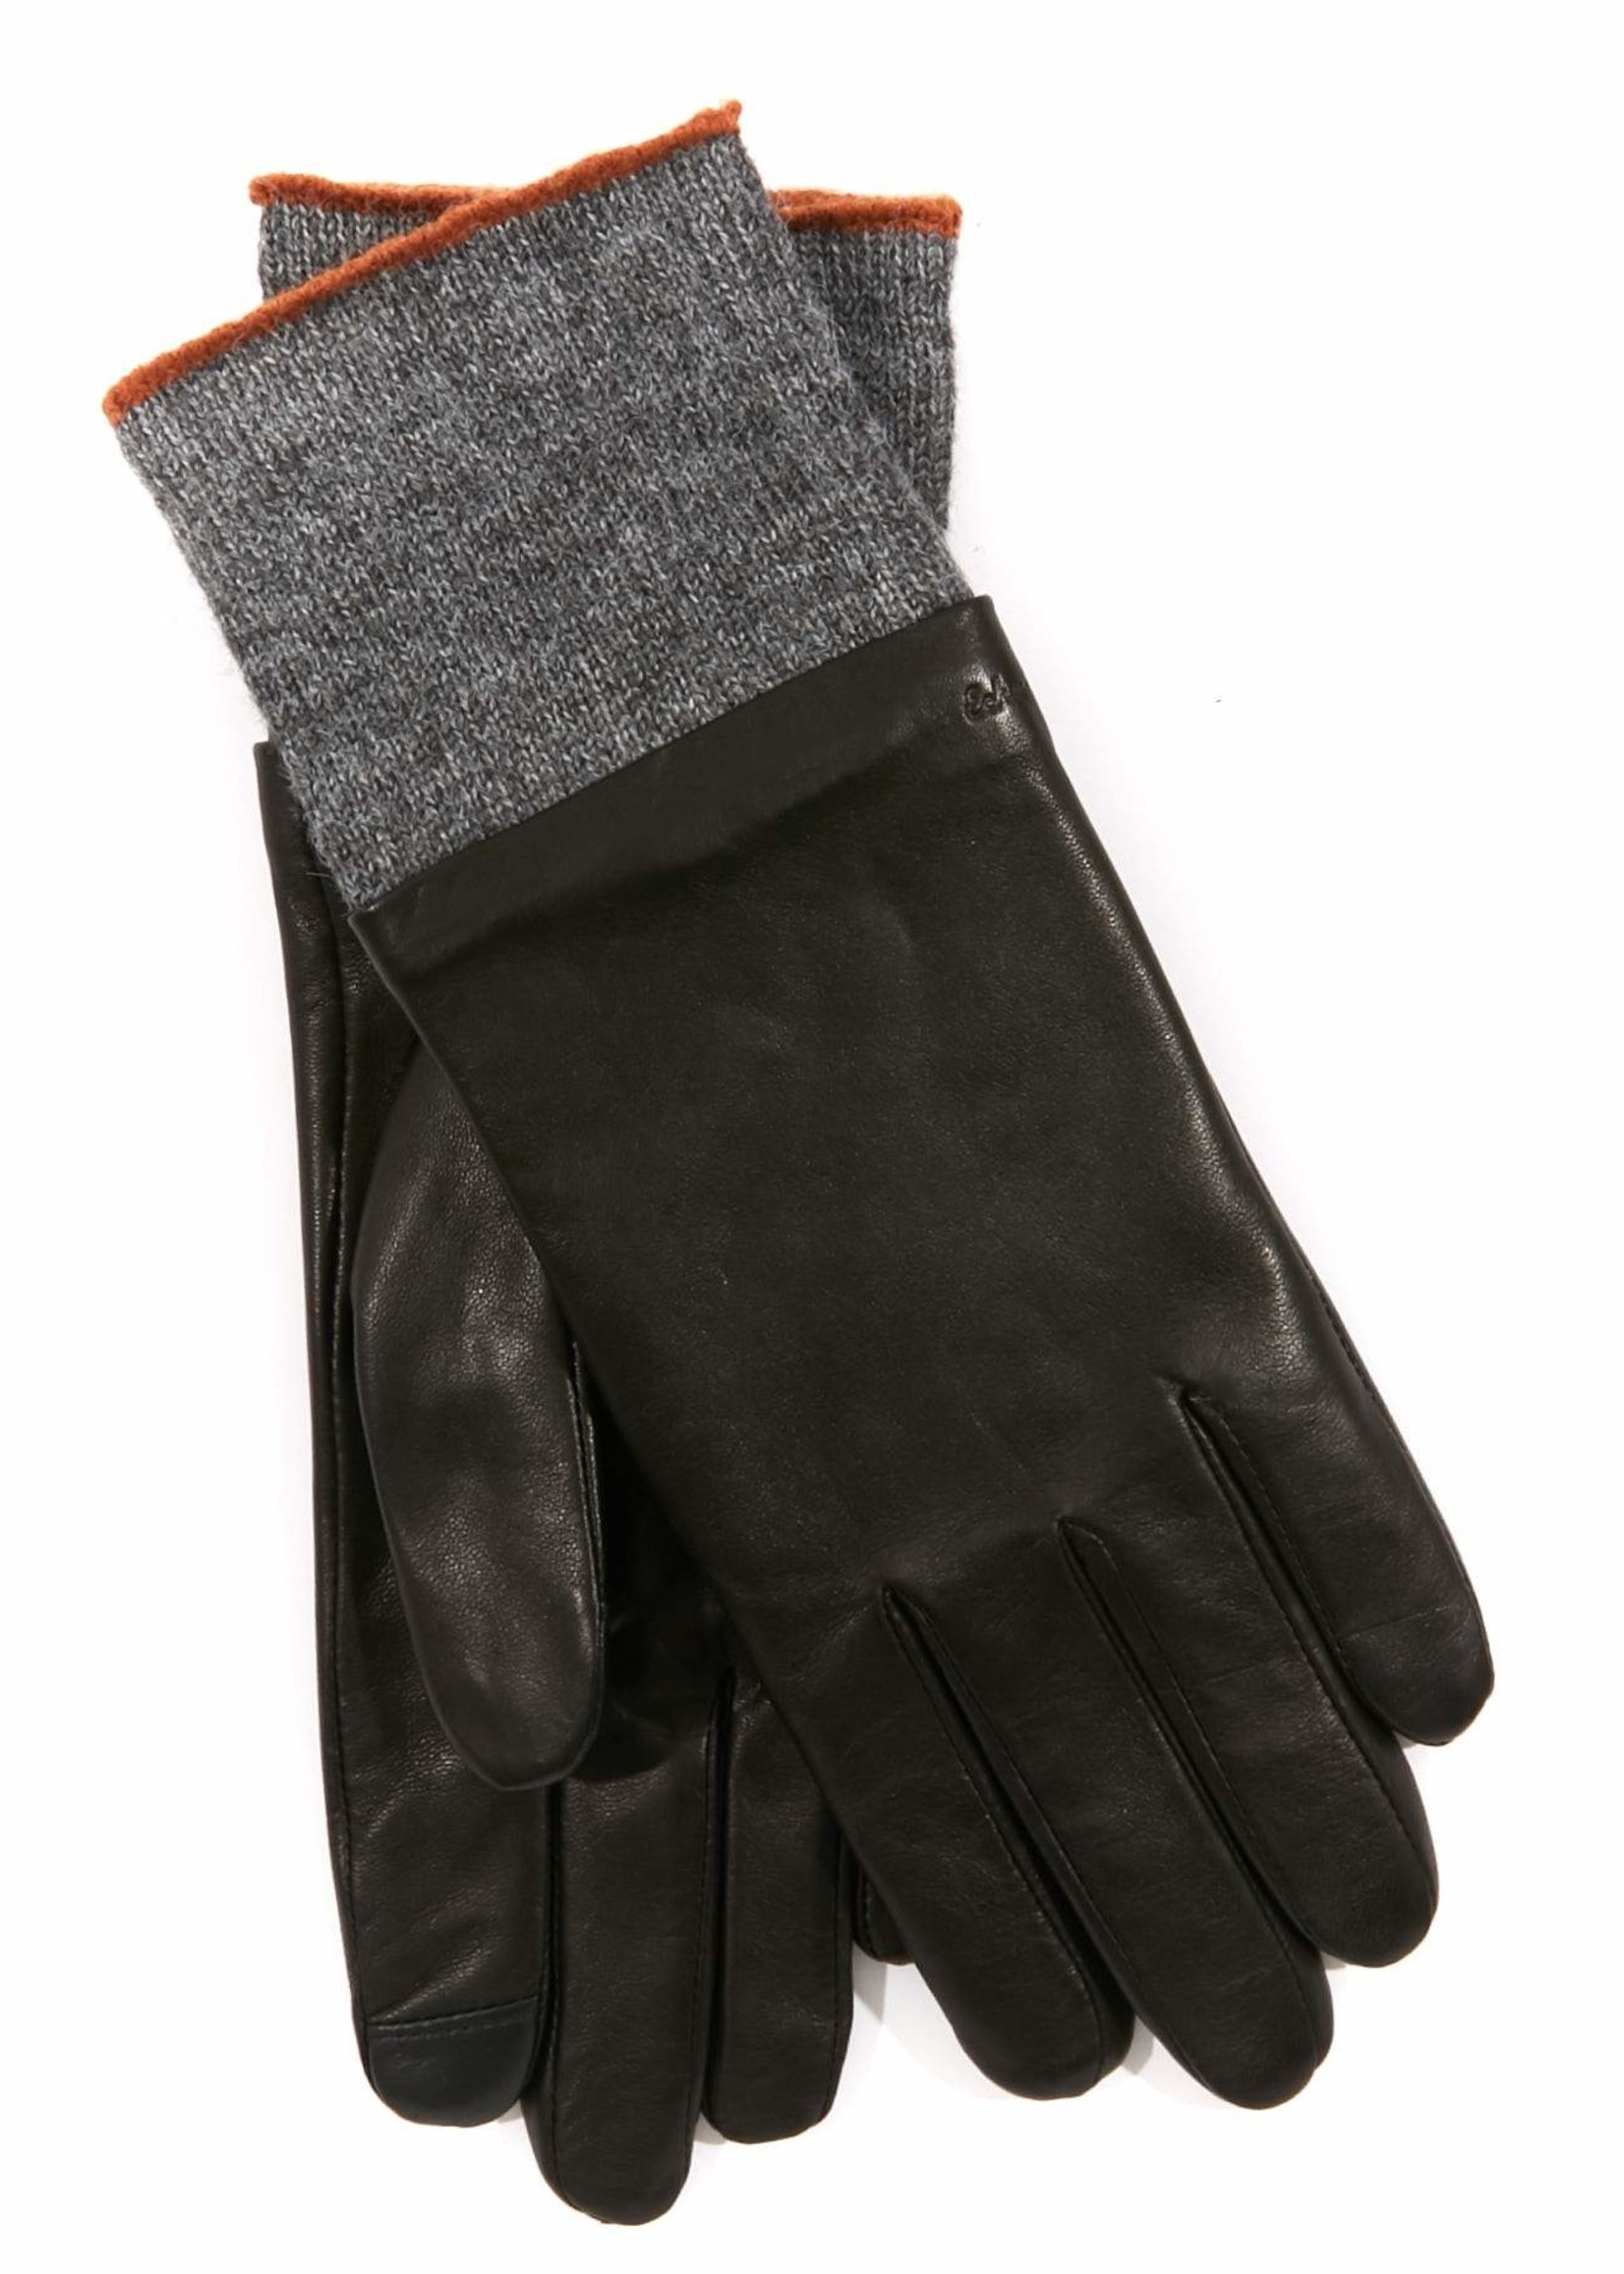 Echo Echo leather glove w/knit cuff